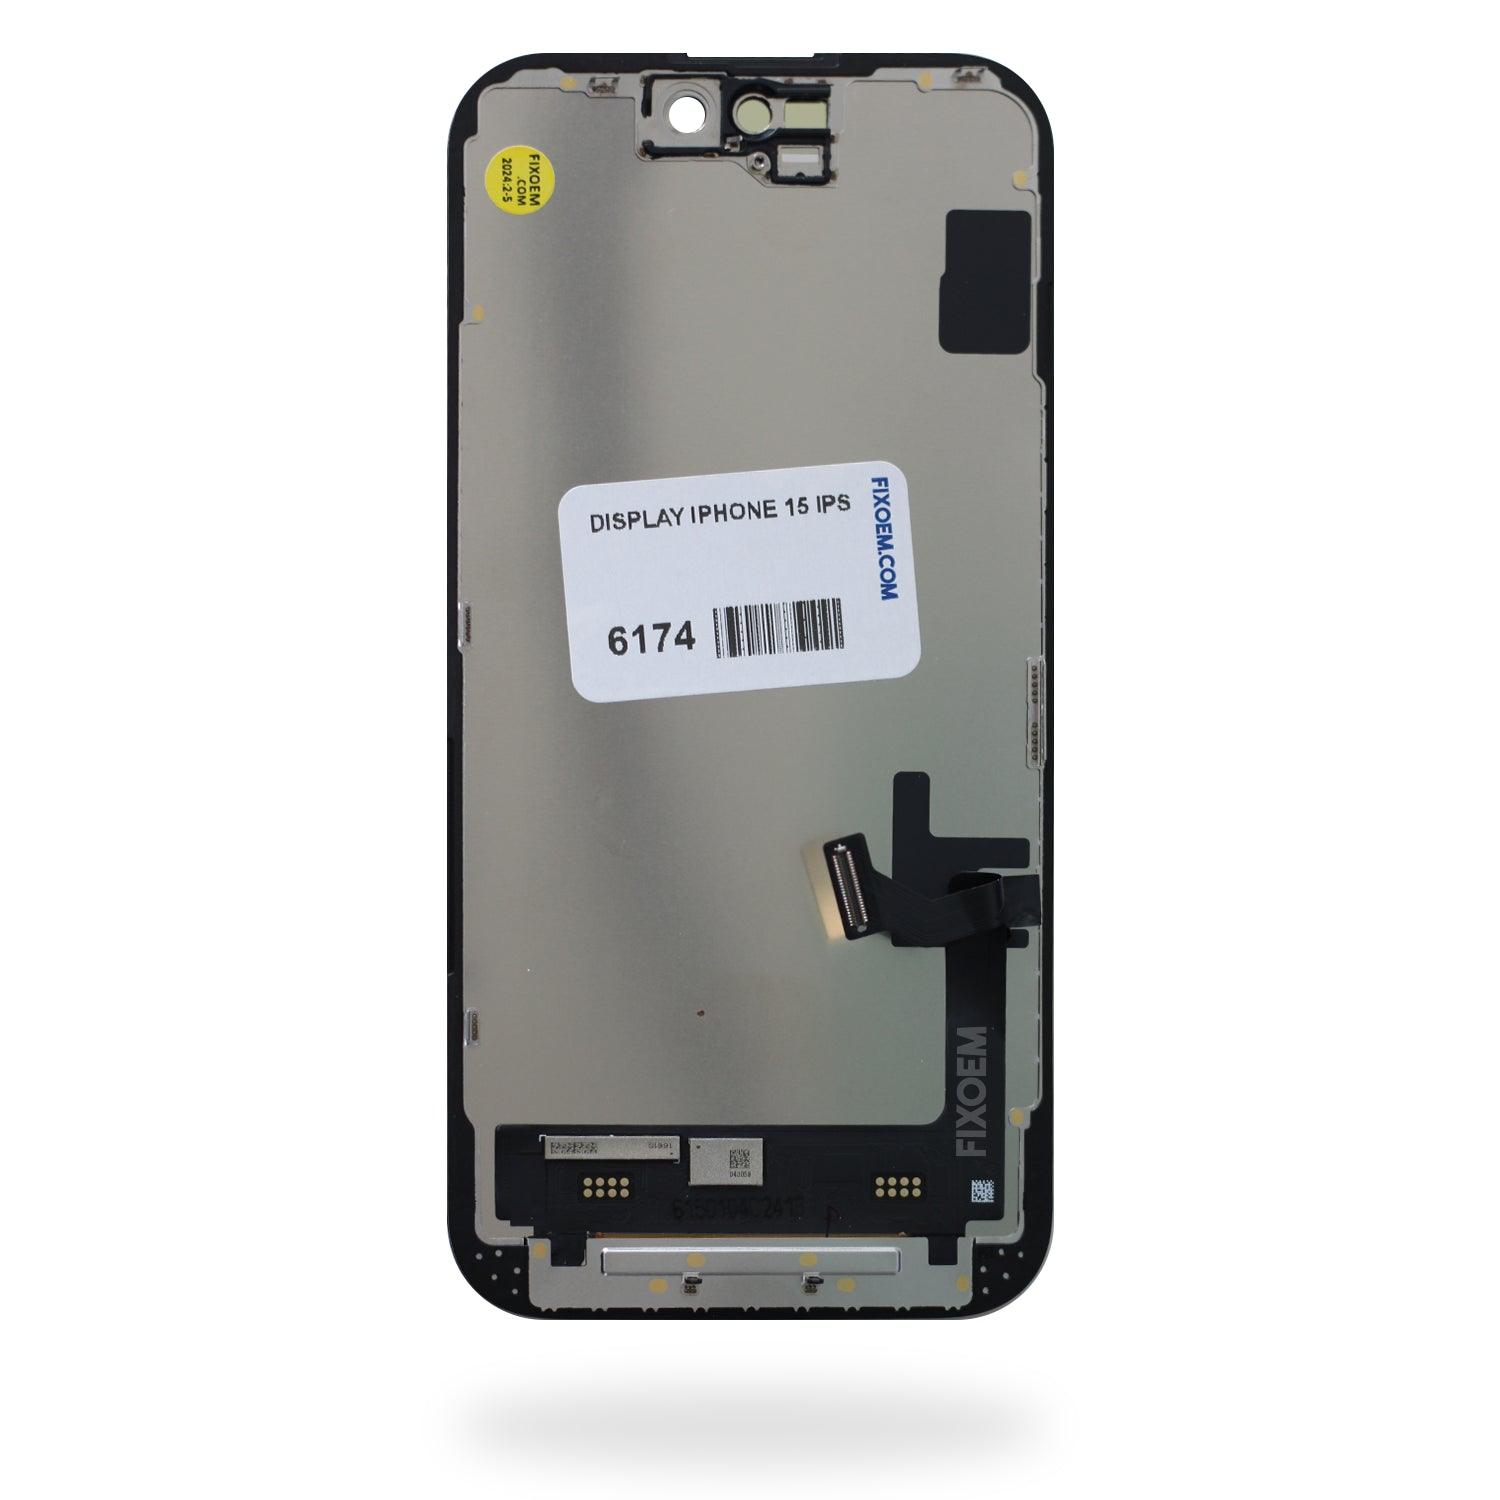 Display iPhone 15 a solo $ 2600.00 Refaccion y puestos celulares, refurbish y microelectronica.- FixOEM